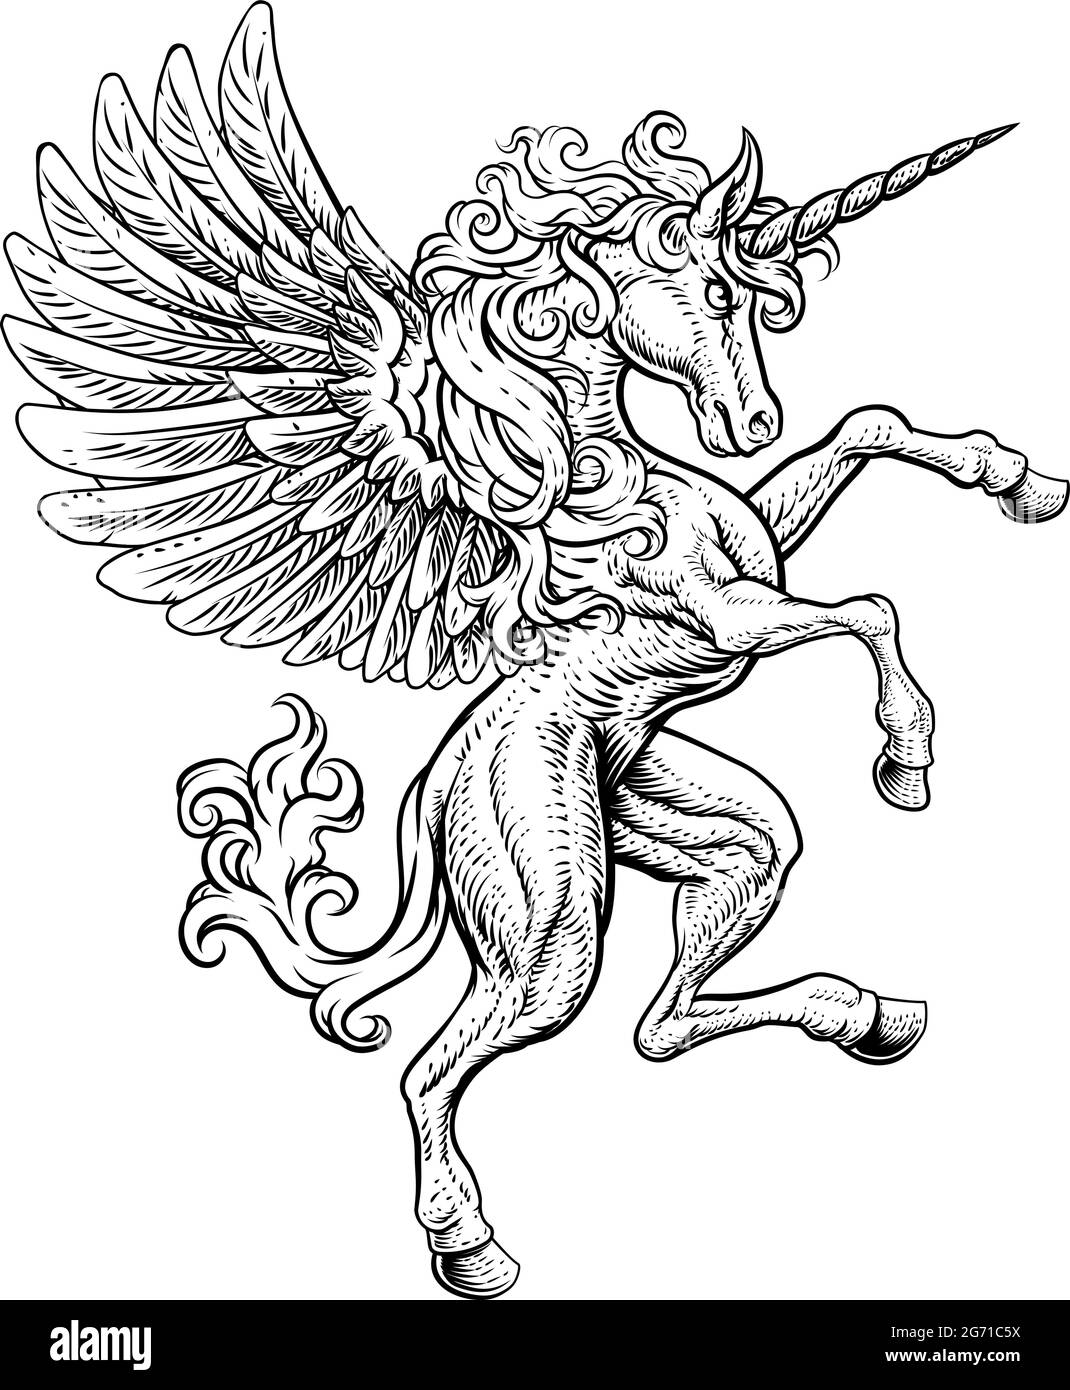 Pegasus Einhorn Aufzucht Grassierende Crest Wings Horse Stock Vektor